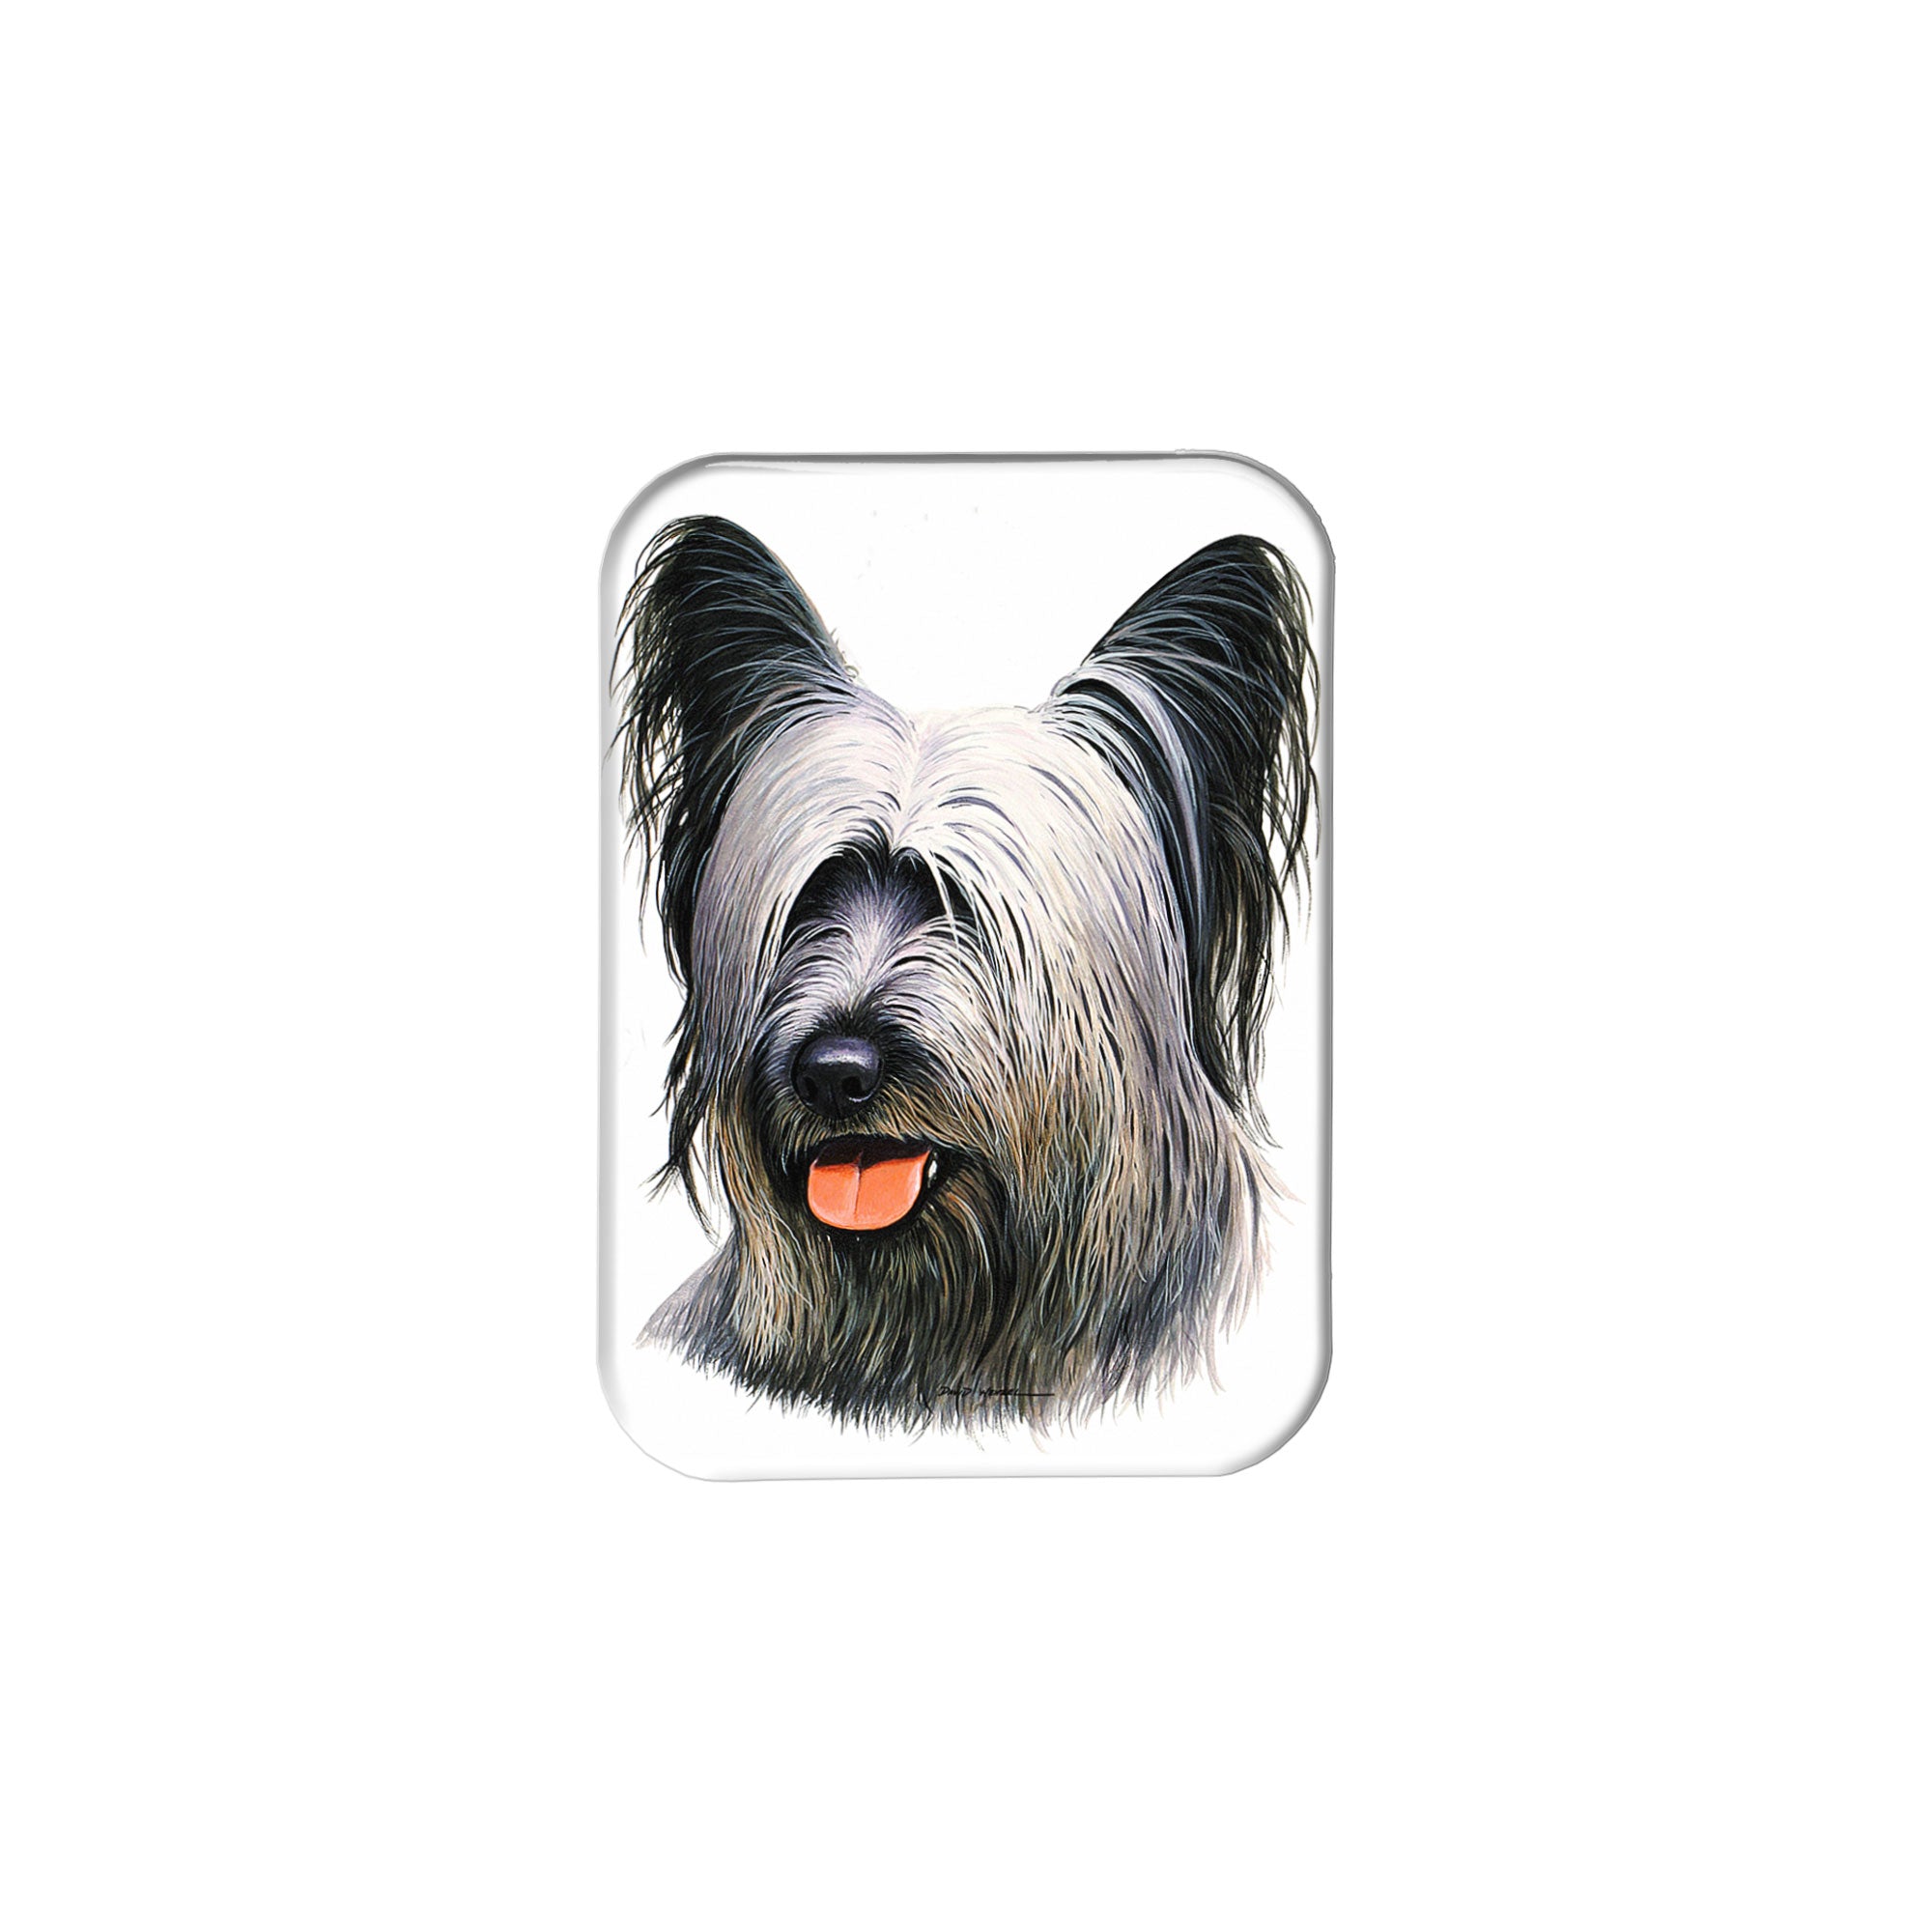 "Skye Terrier" - 2.5" X 3.5" Rectangle Fridge Magnets